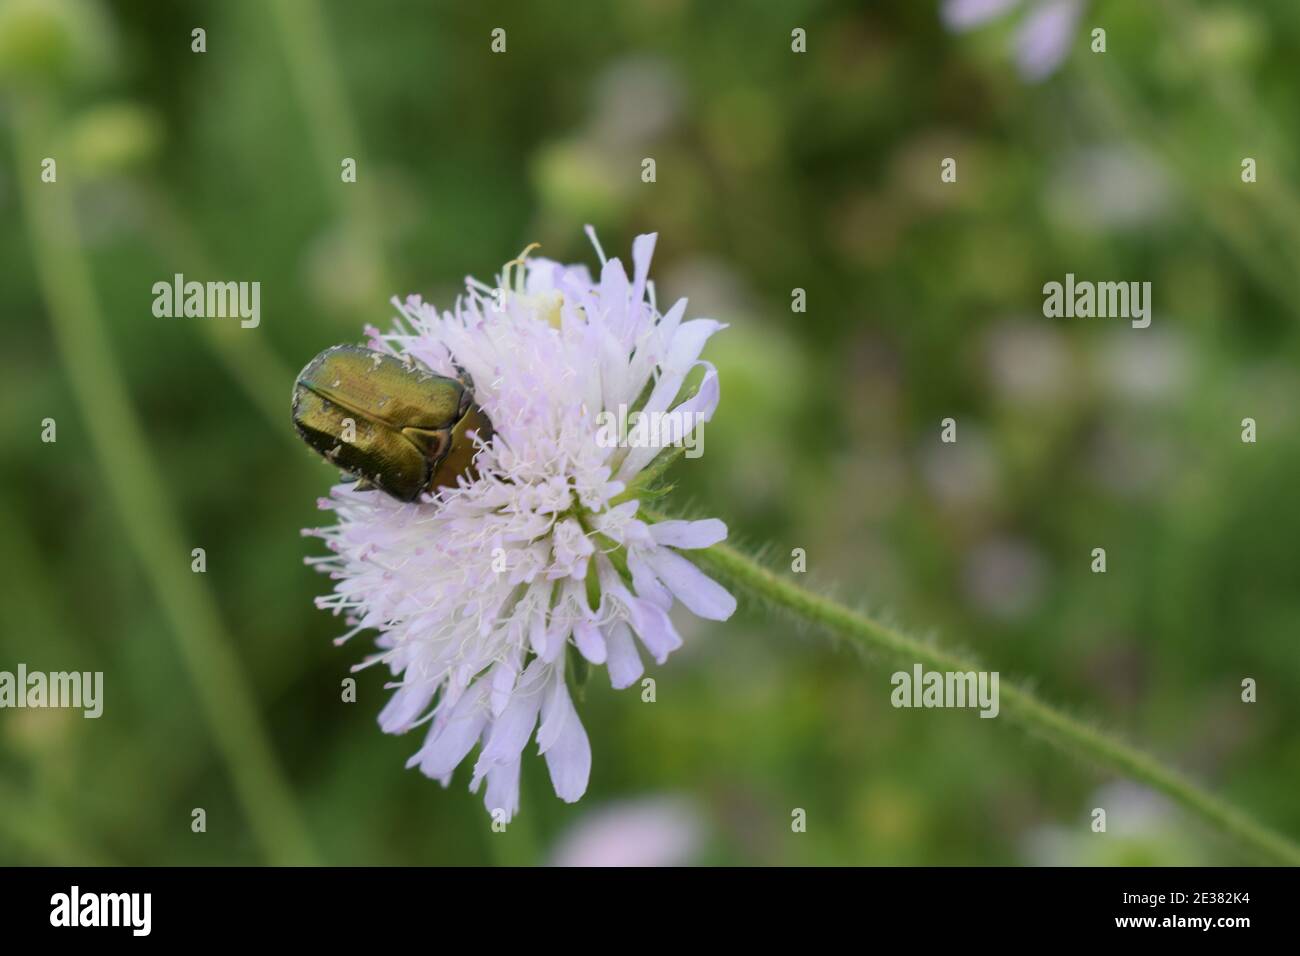 Blumenkäfer. Cetonia aurata, genannt der Rosenkäfer oder der grüne Rosenkäfer, ist ein Käfer, 20 mm lang, der einen metallisch strukturgefärbten gre hat Stockfoto